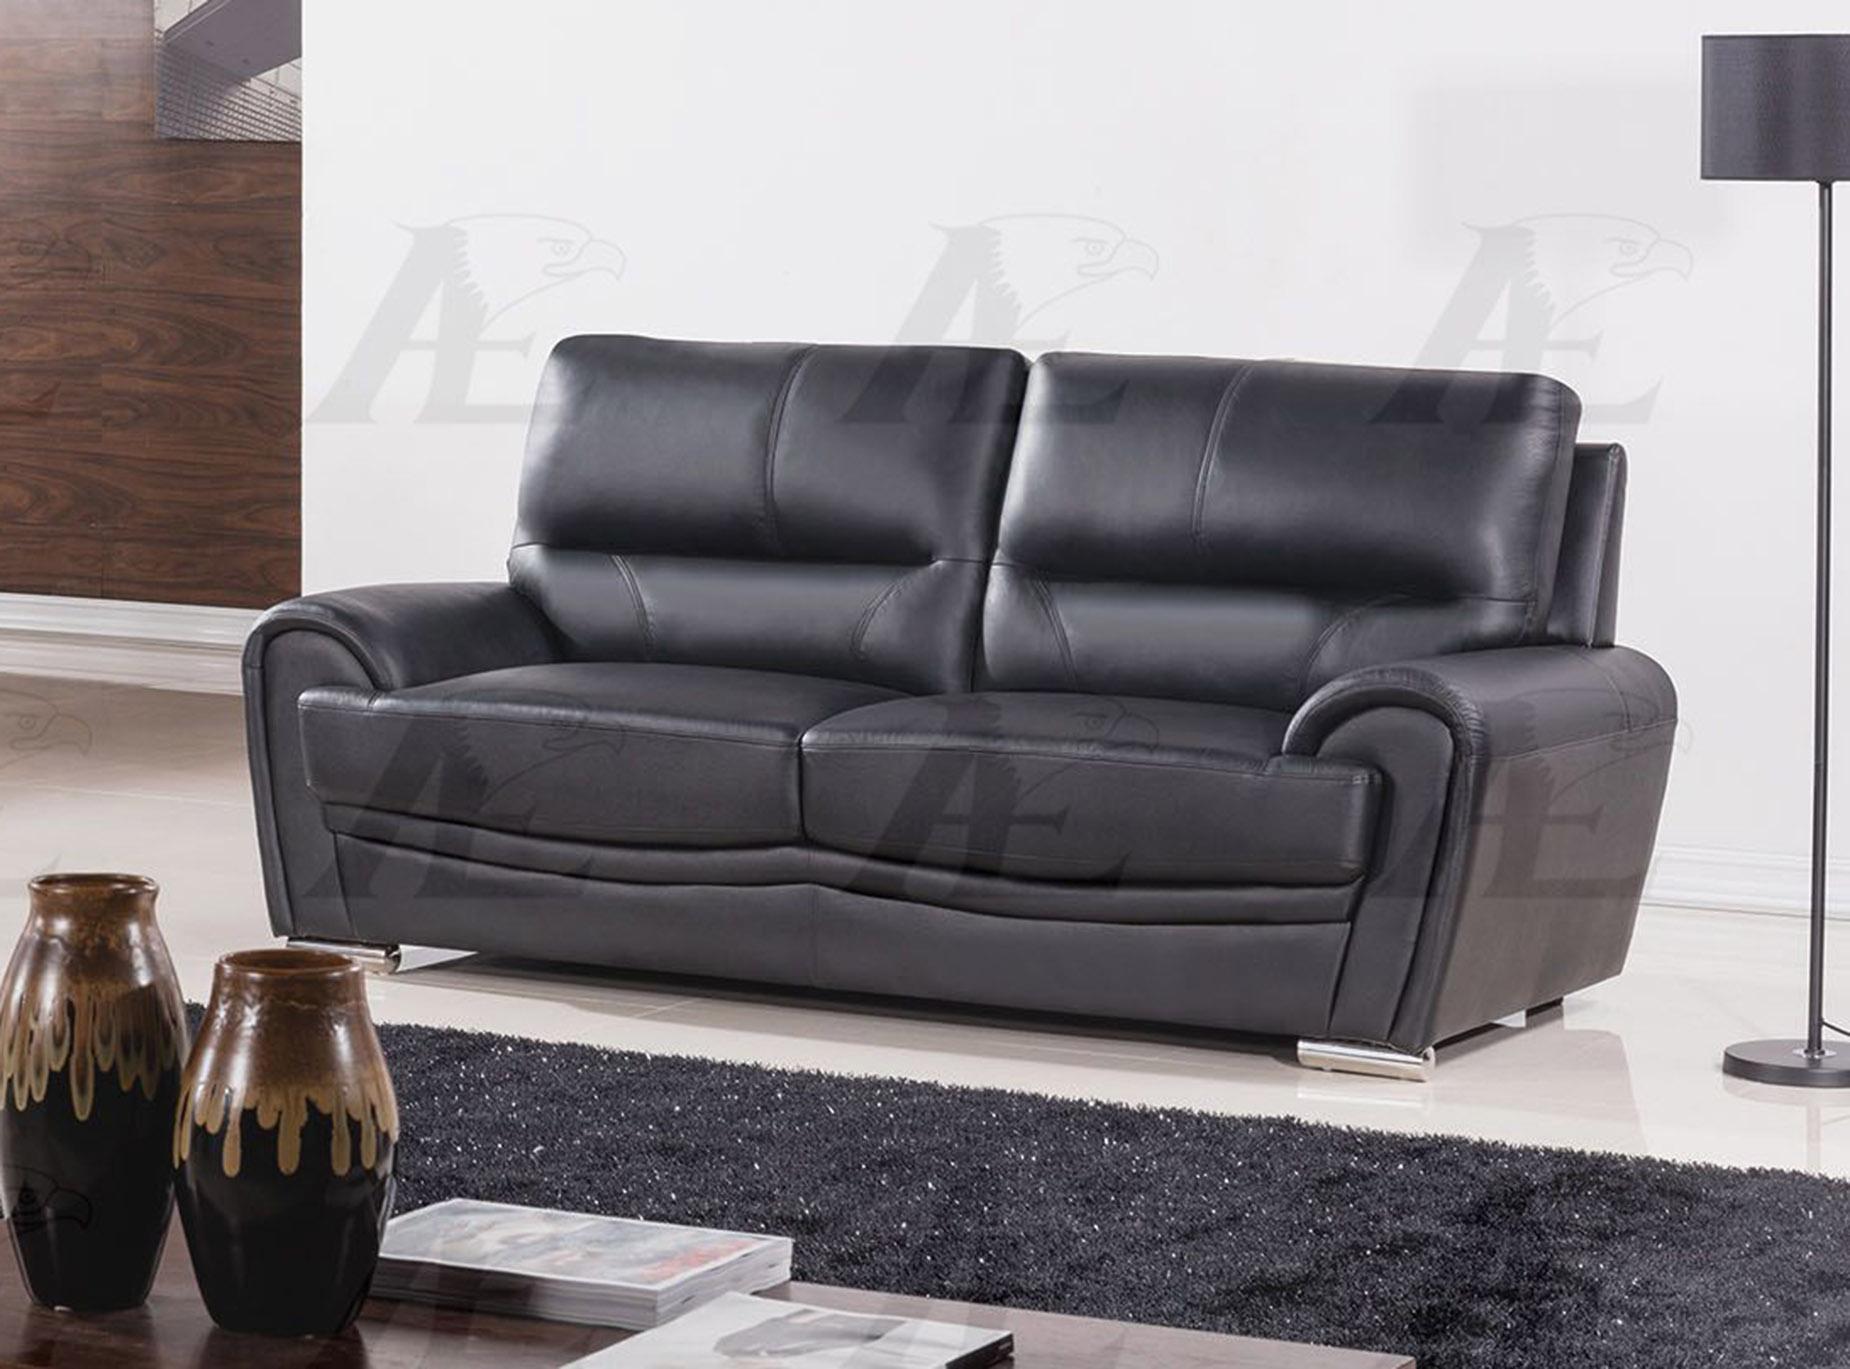 

    
American Eagle Furniture EK522-BK Black Sofa  Genuine Leather
